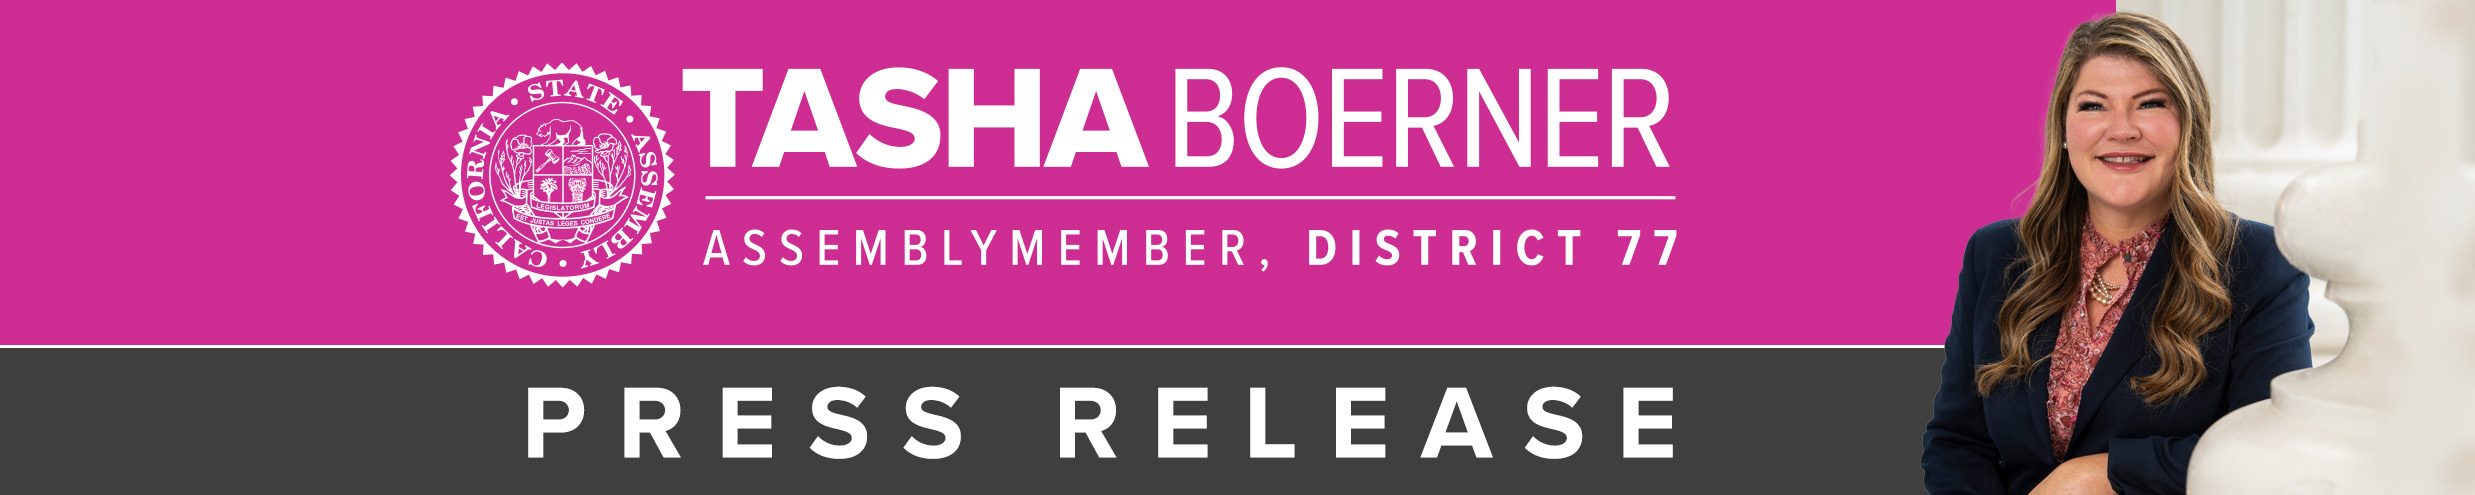 Assemblymember Tasha Boerner Press Release